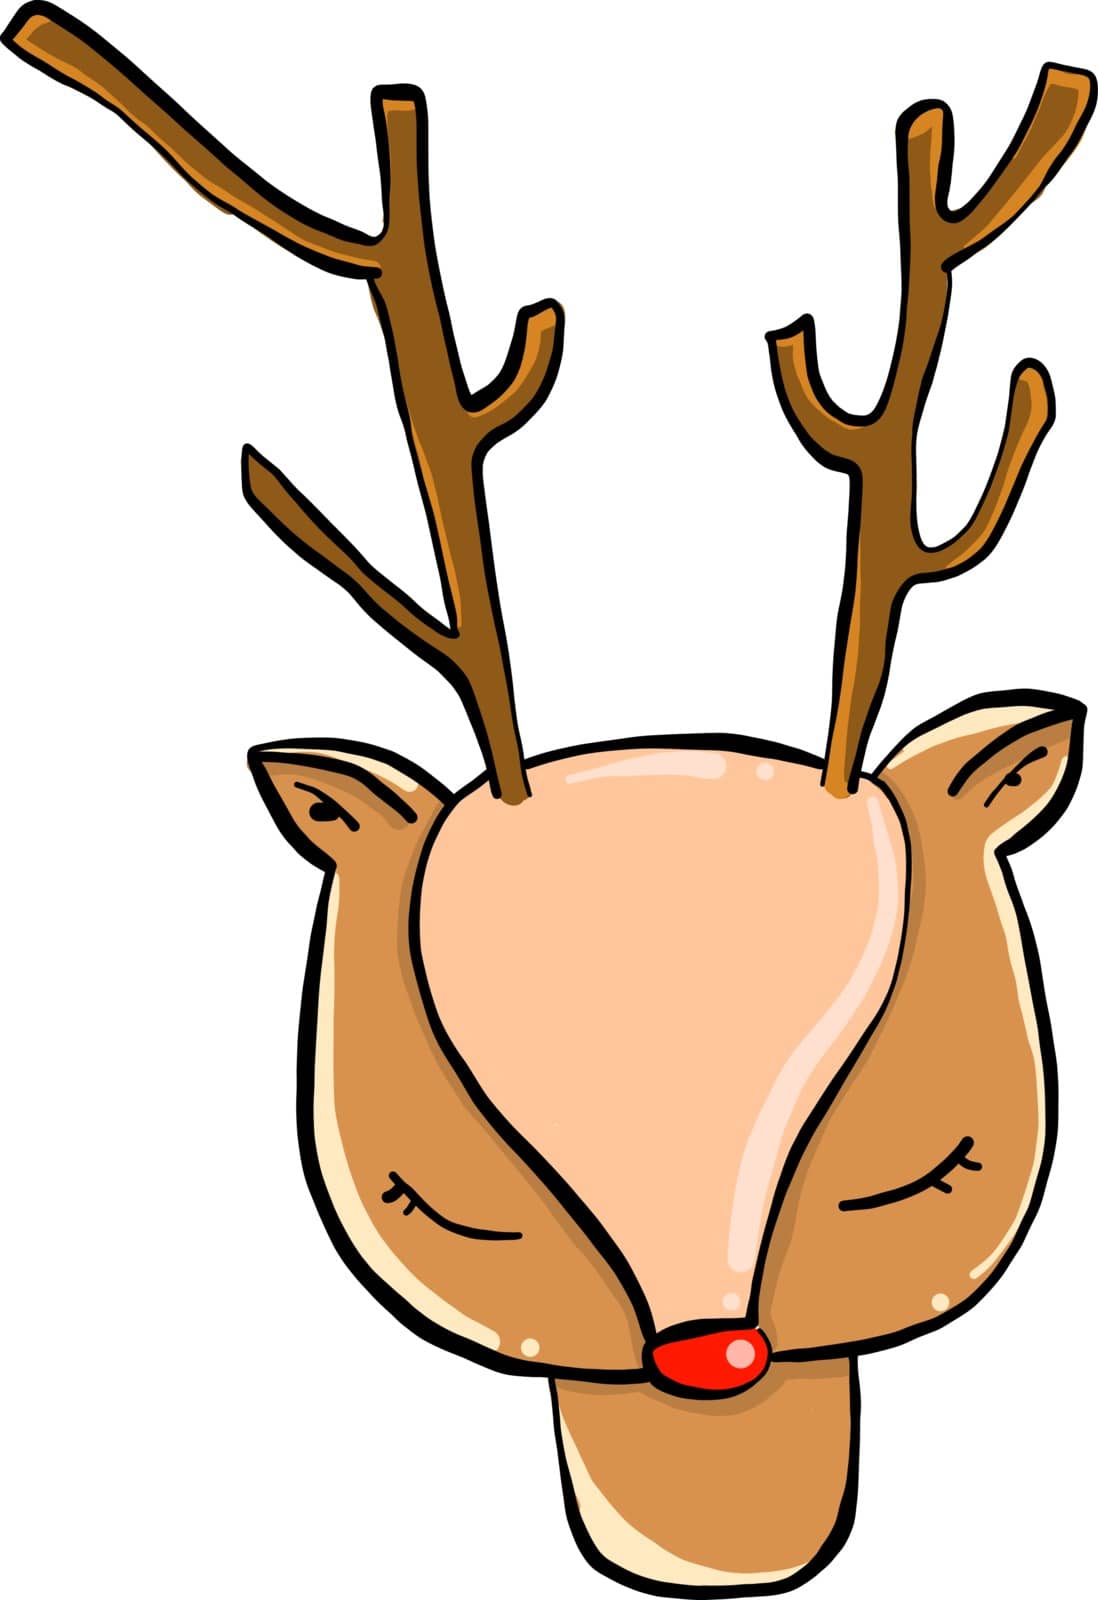 Little deer, illustration, vector on white background. by Morphart